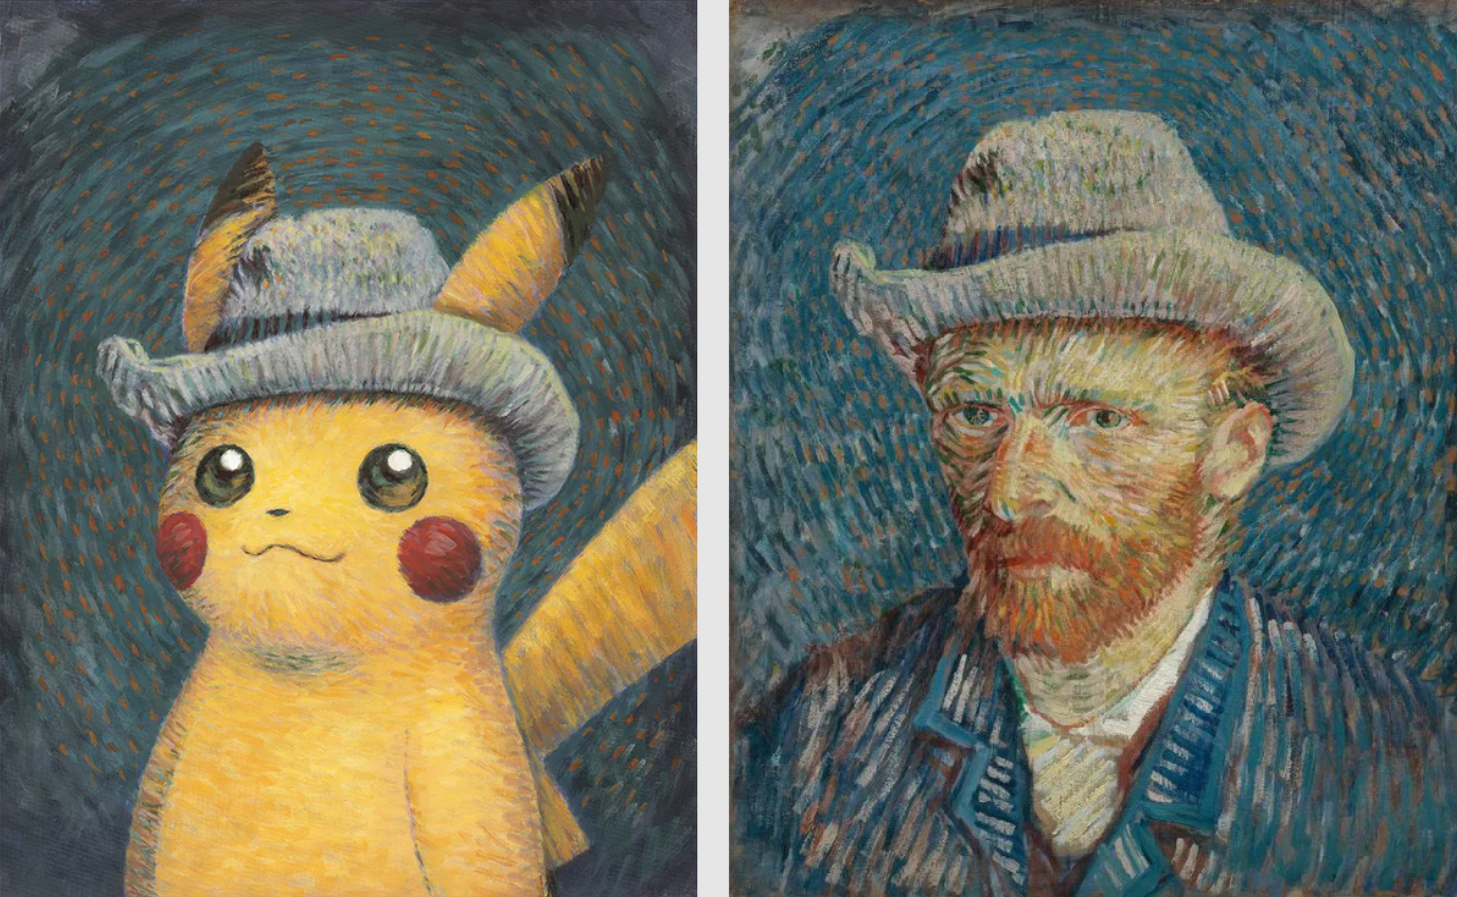 Qualche considerazione sulla mostra che invita i Pokémon a entrare nelle opere di Van Gogh